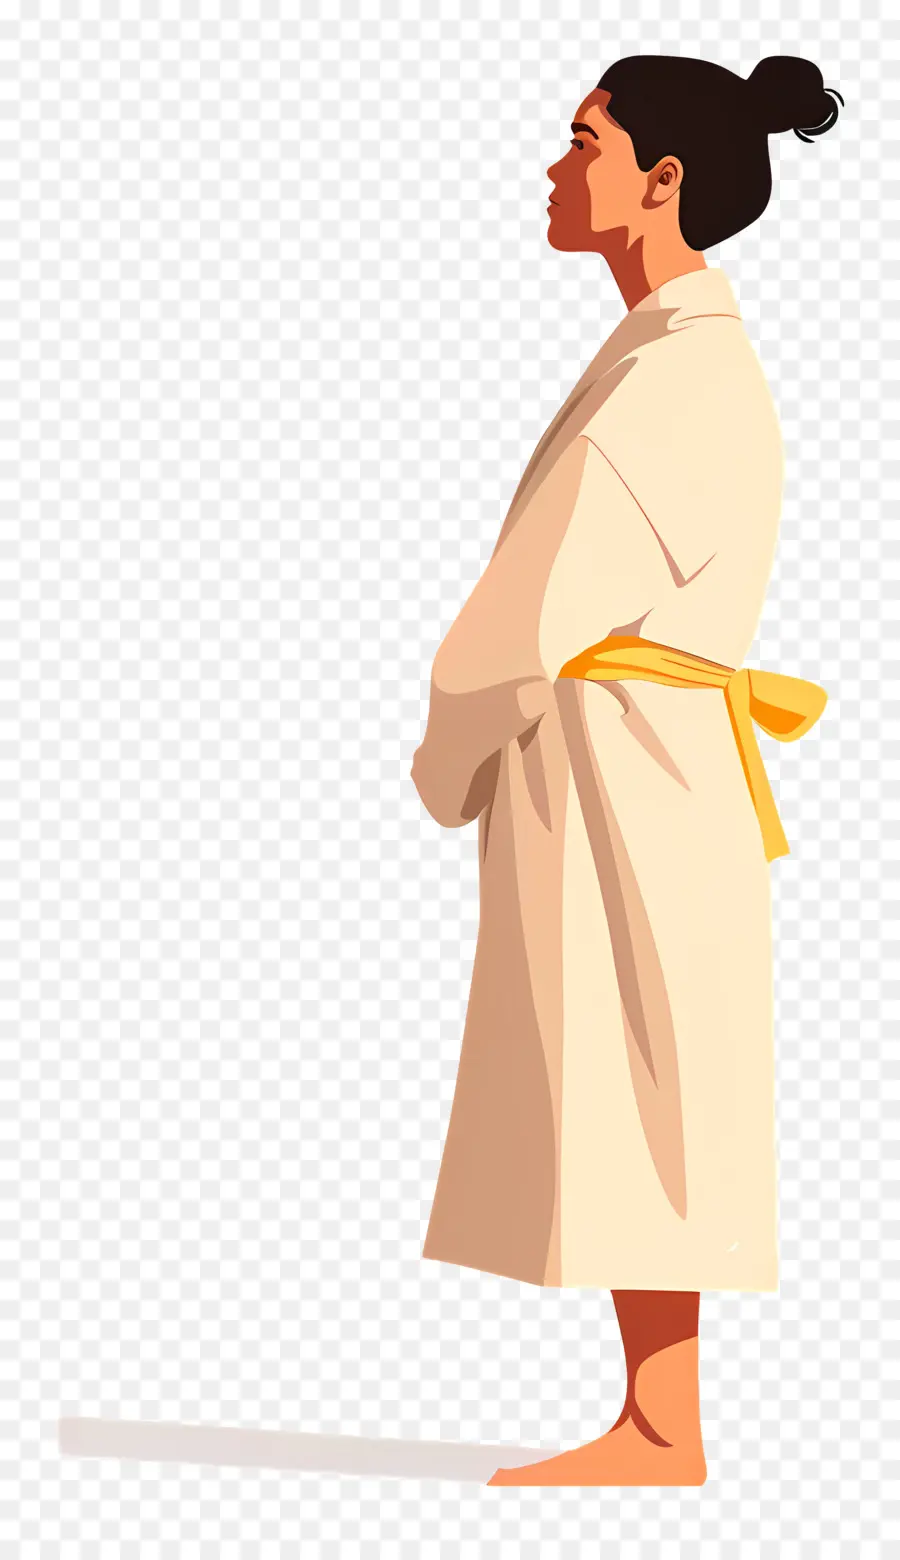 nữ phụ nữ thắt lưng vải trắng - Người phụ nữ mặc áo choàng có biểu hiện nghiêm túc, ngọc trai